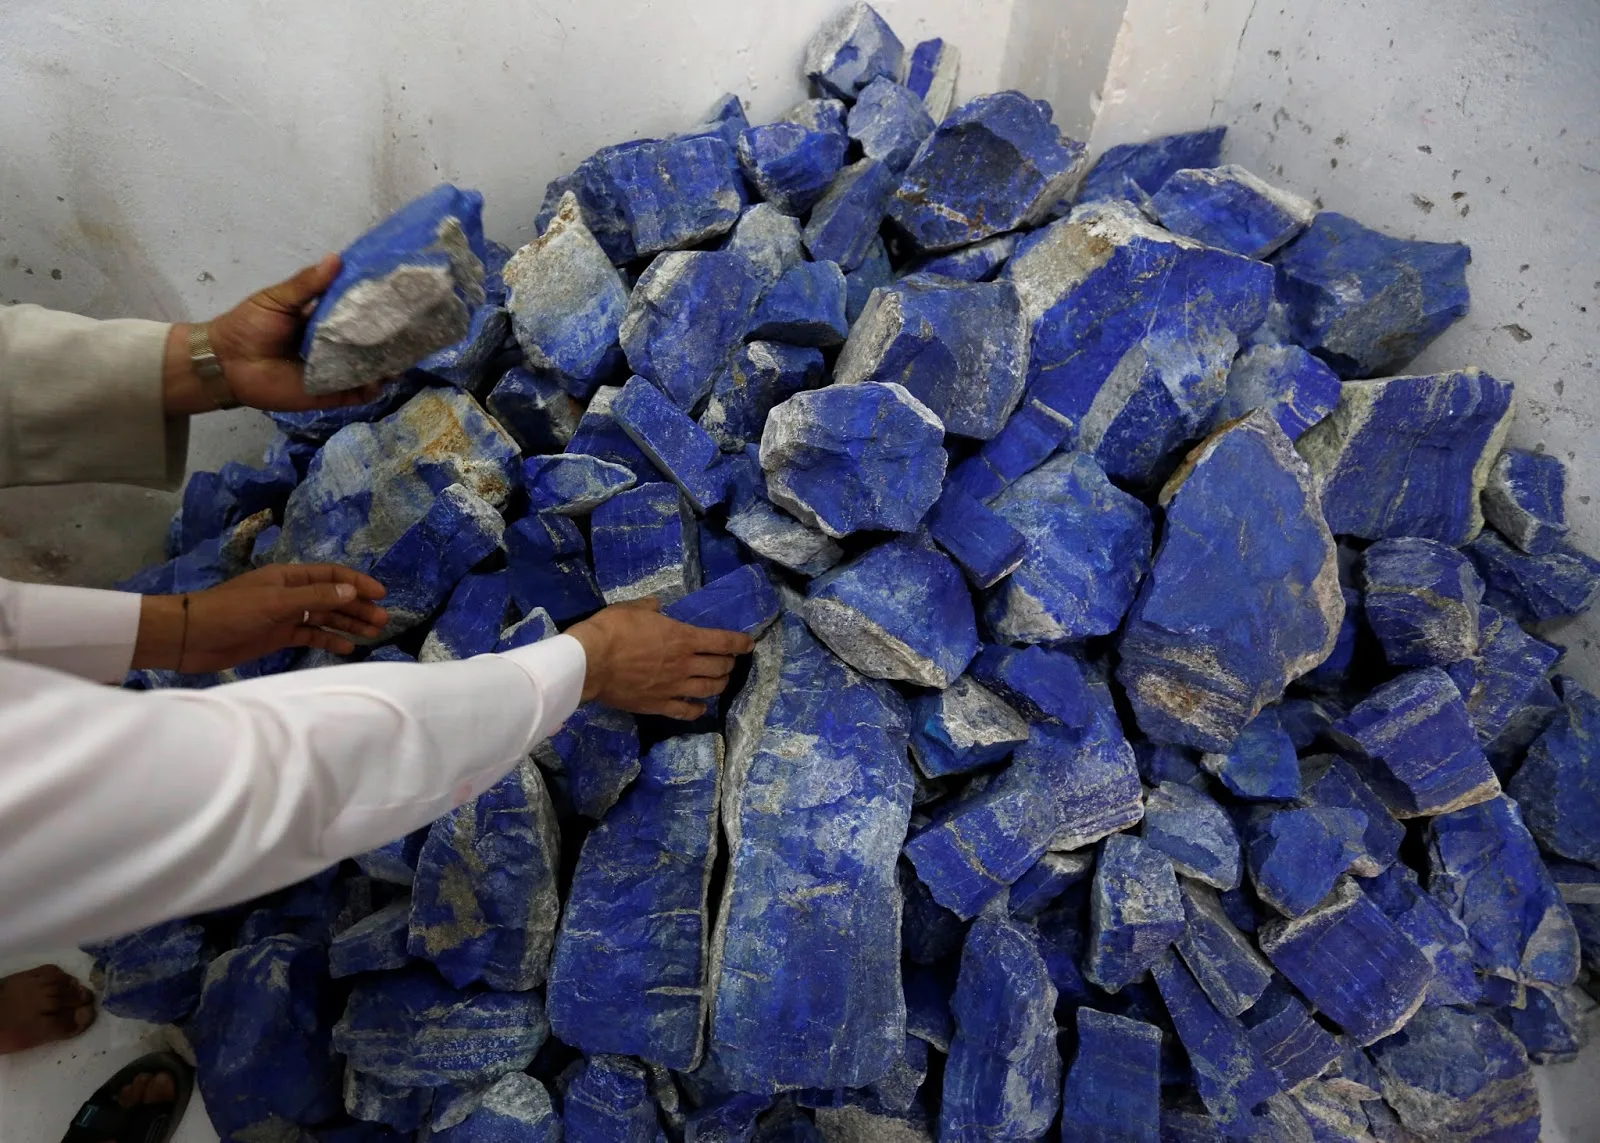 قيمة الثروة المعدنية في أفغانستان تقدر بنحو تريليون دولار